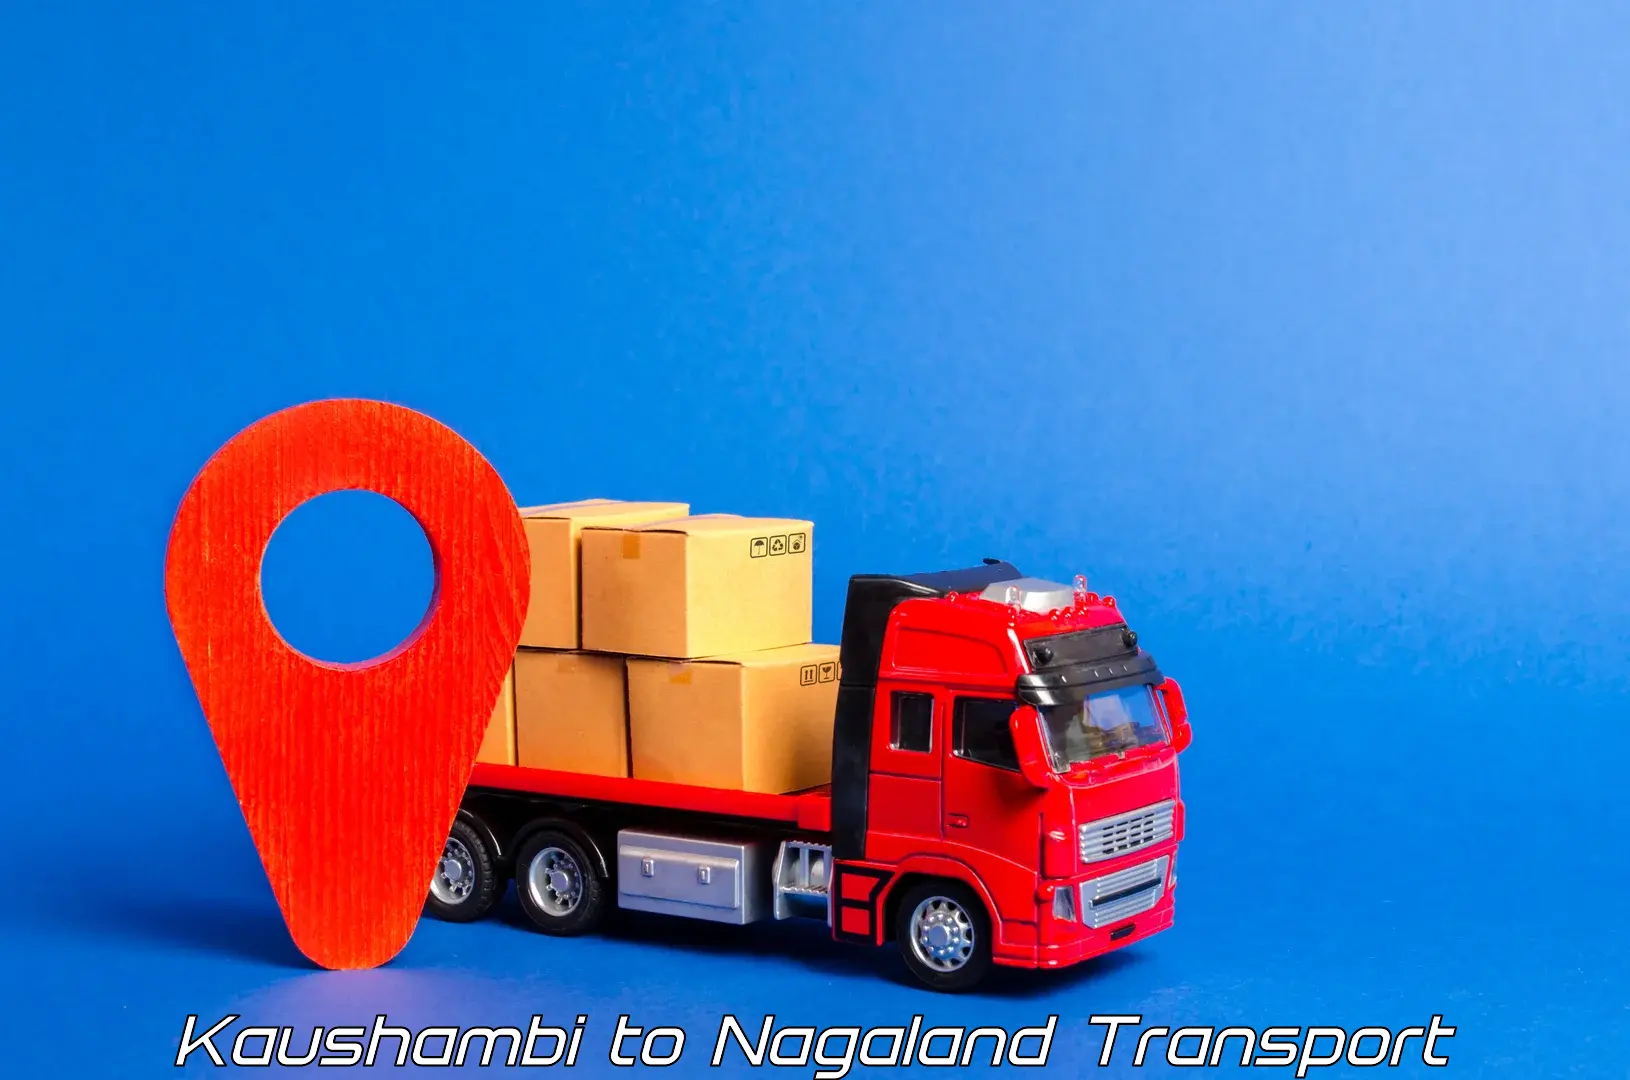 Truck transport companies in India Kaushambi to Peren